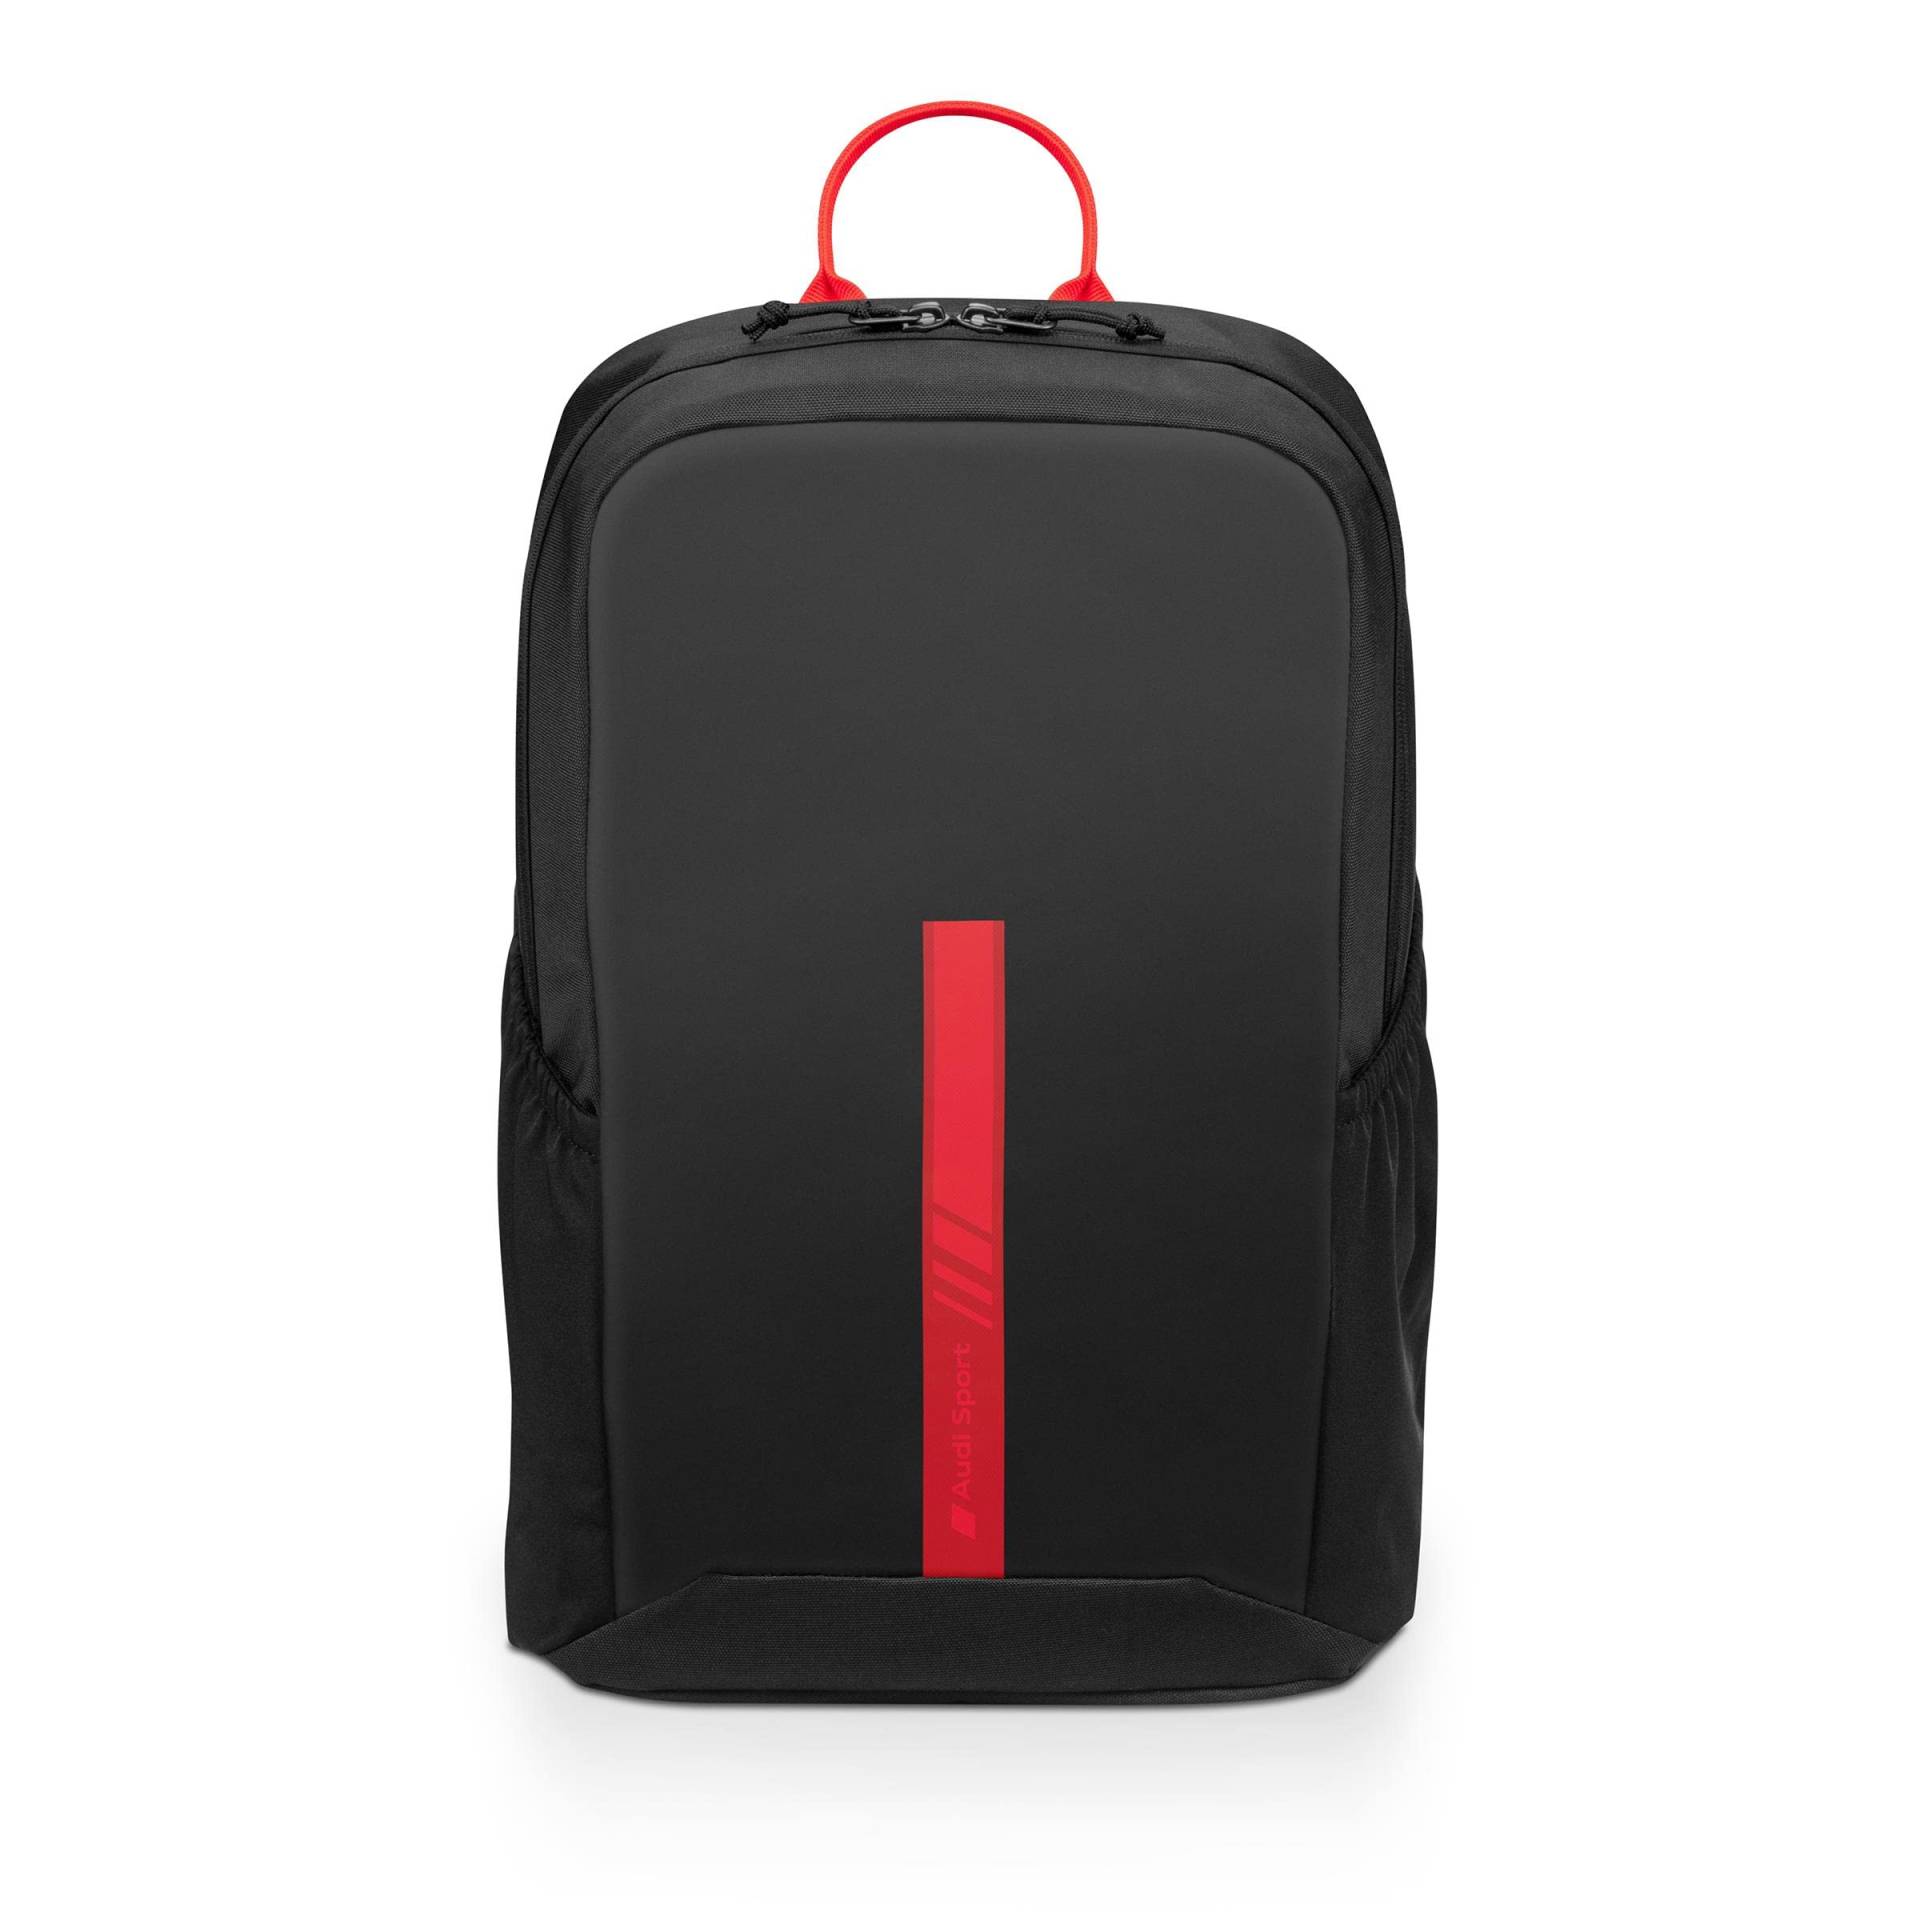 Audi 3152200600 Rucksack Backpack Tasche, schwarz, mit Audi Sport Schriftzug in rot von Audi collection